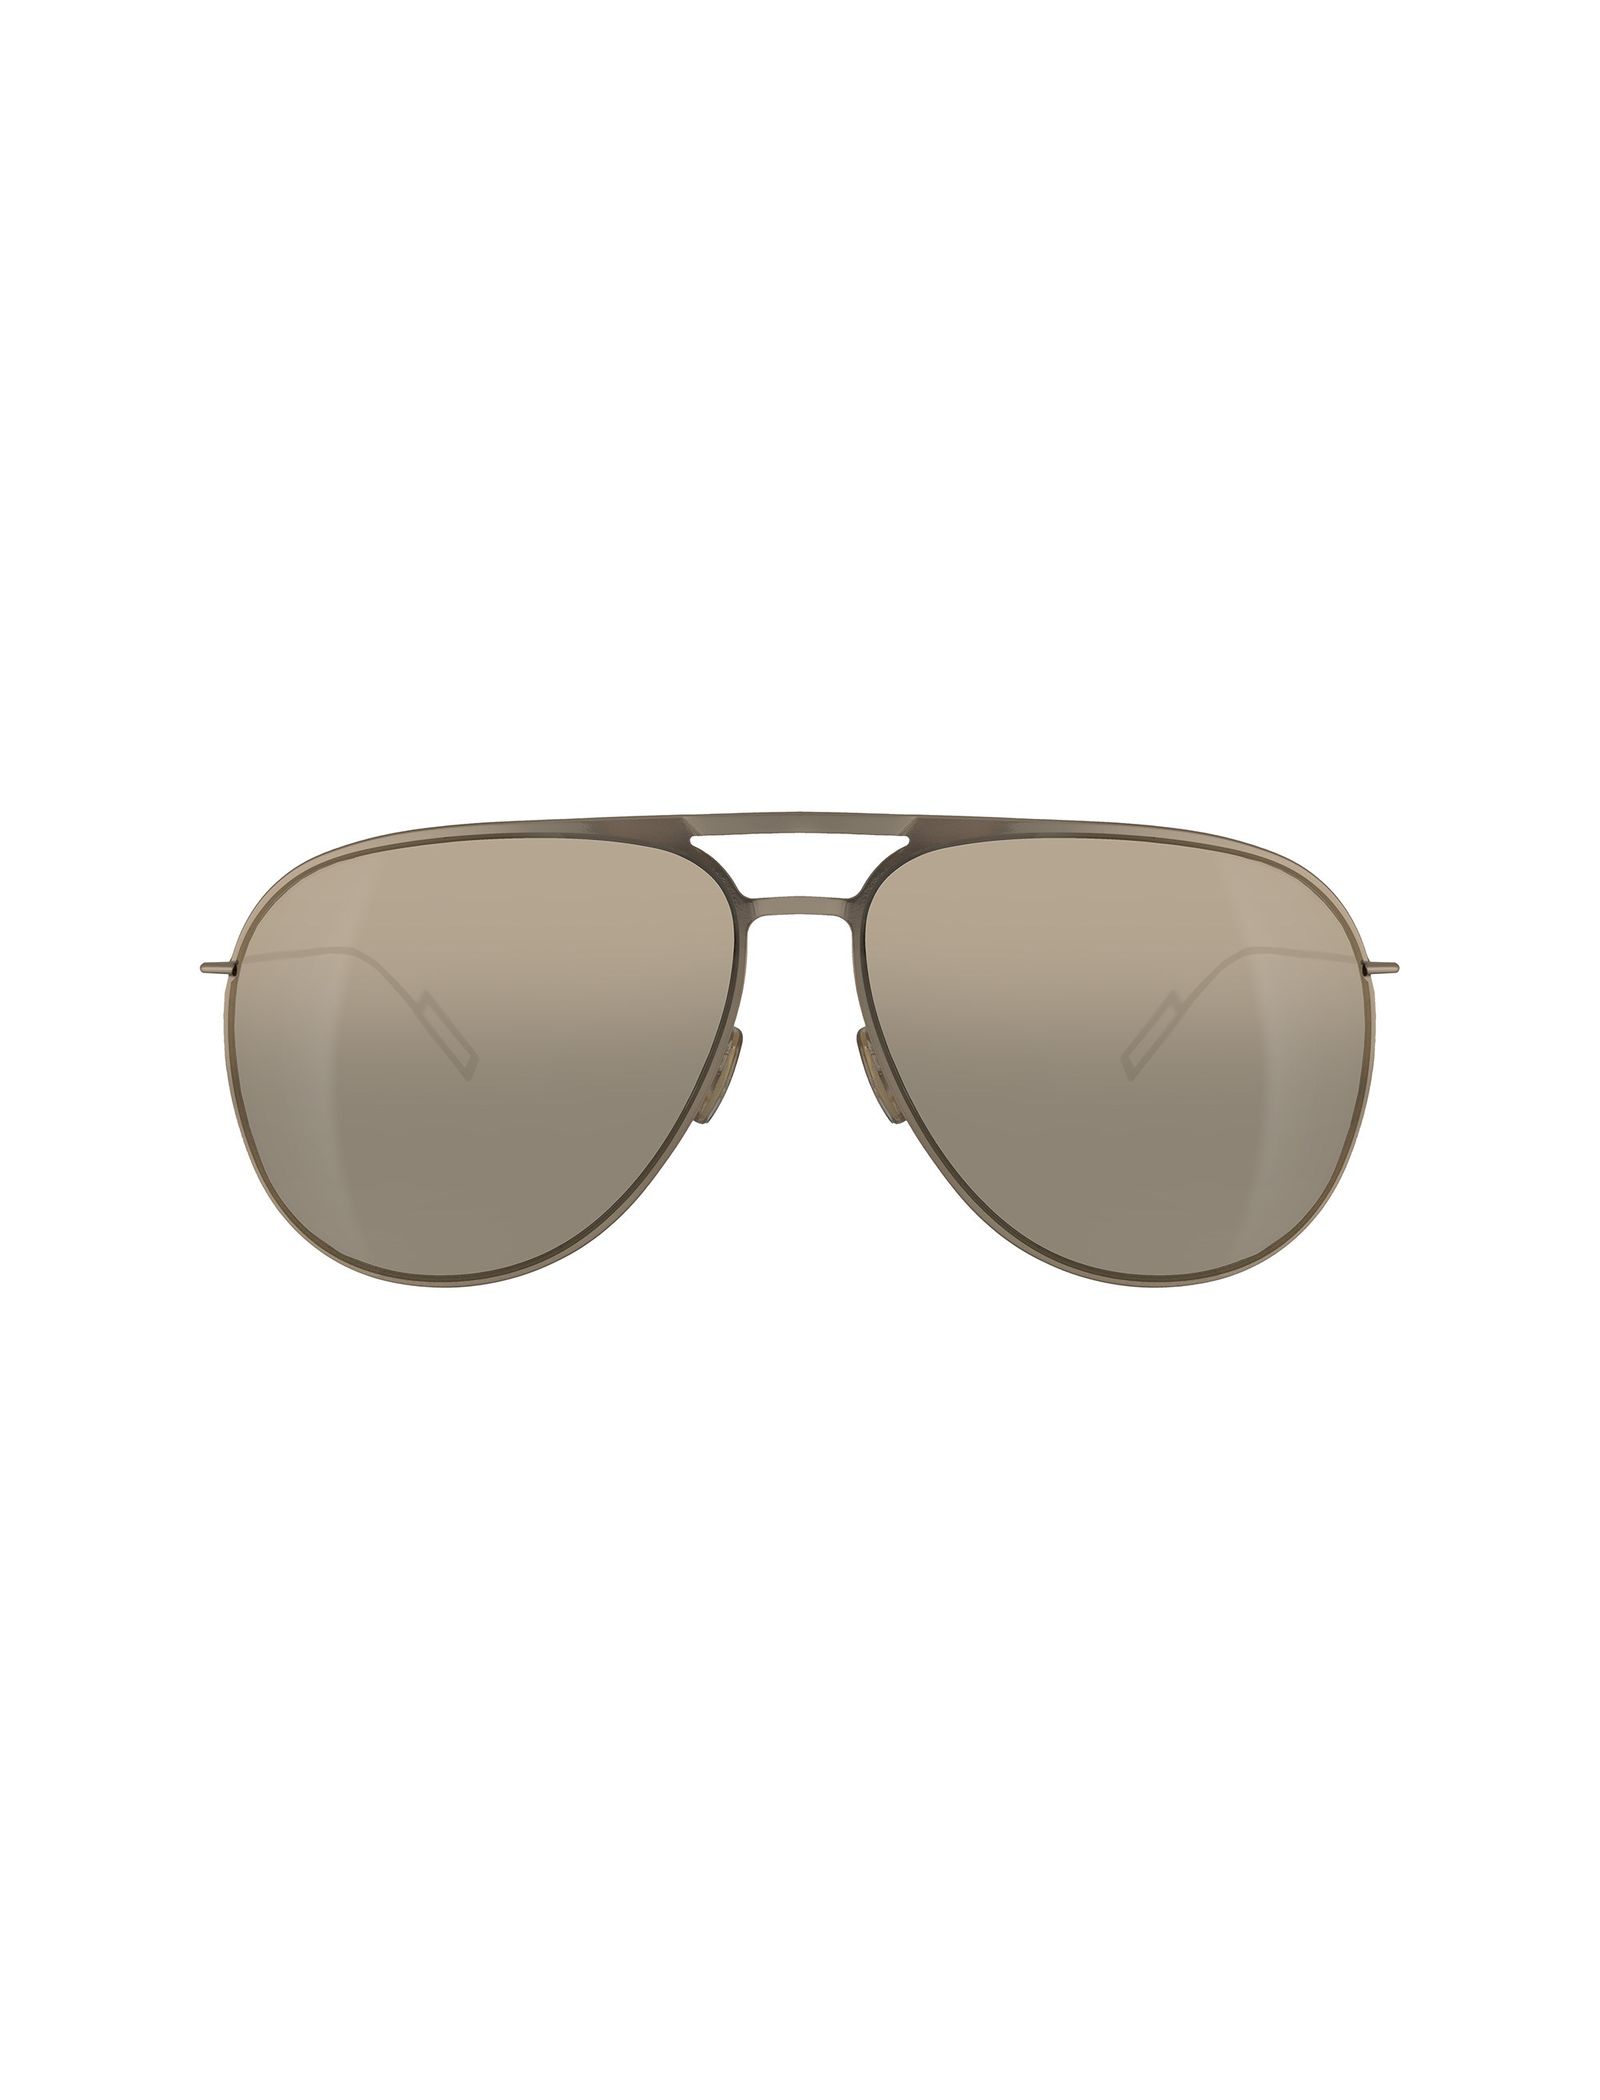 عینک آفتابی خلبانی مردانه - دیور - طلايي - 2